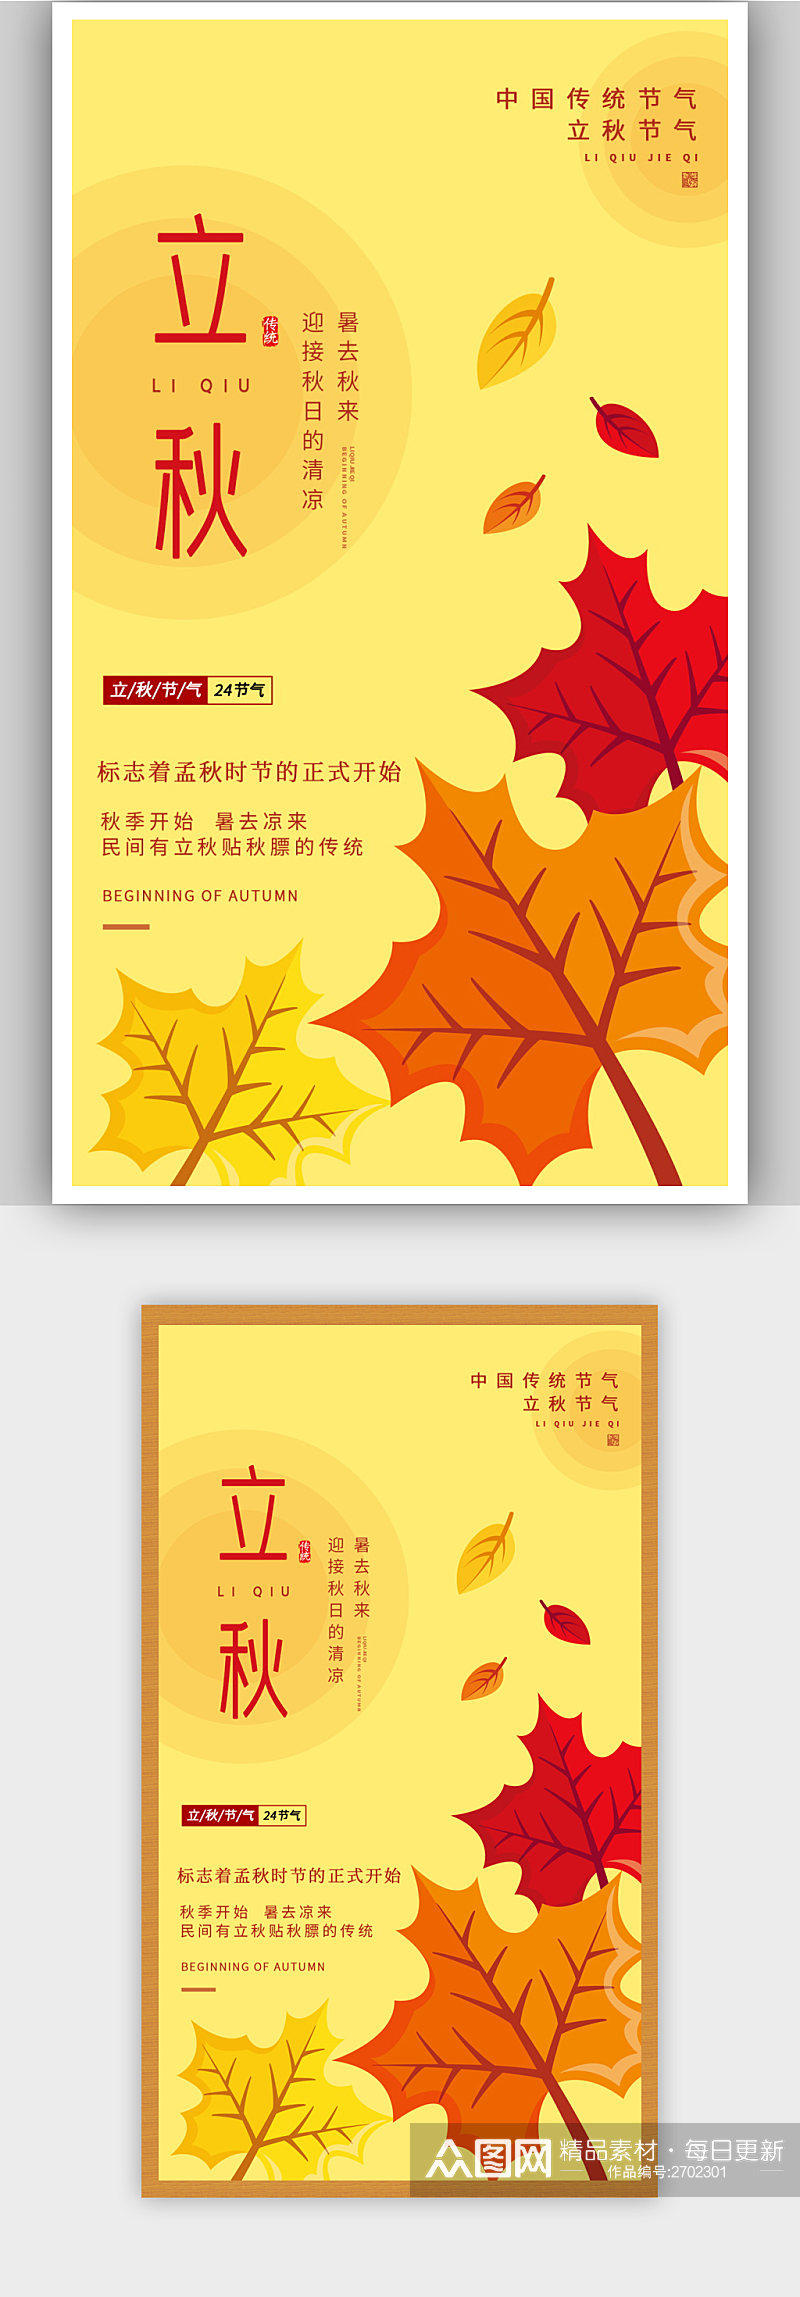 黄色简约创意枫叶立秋节气宣传海报素材